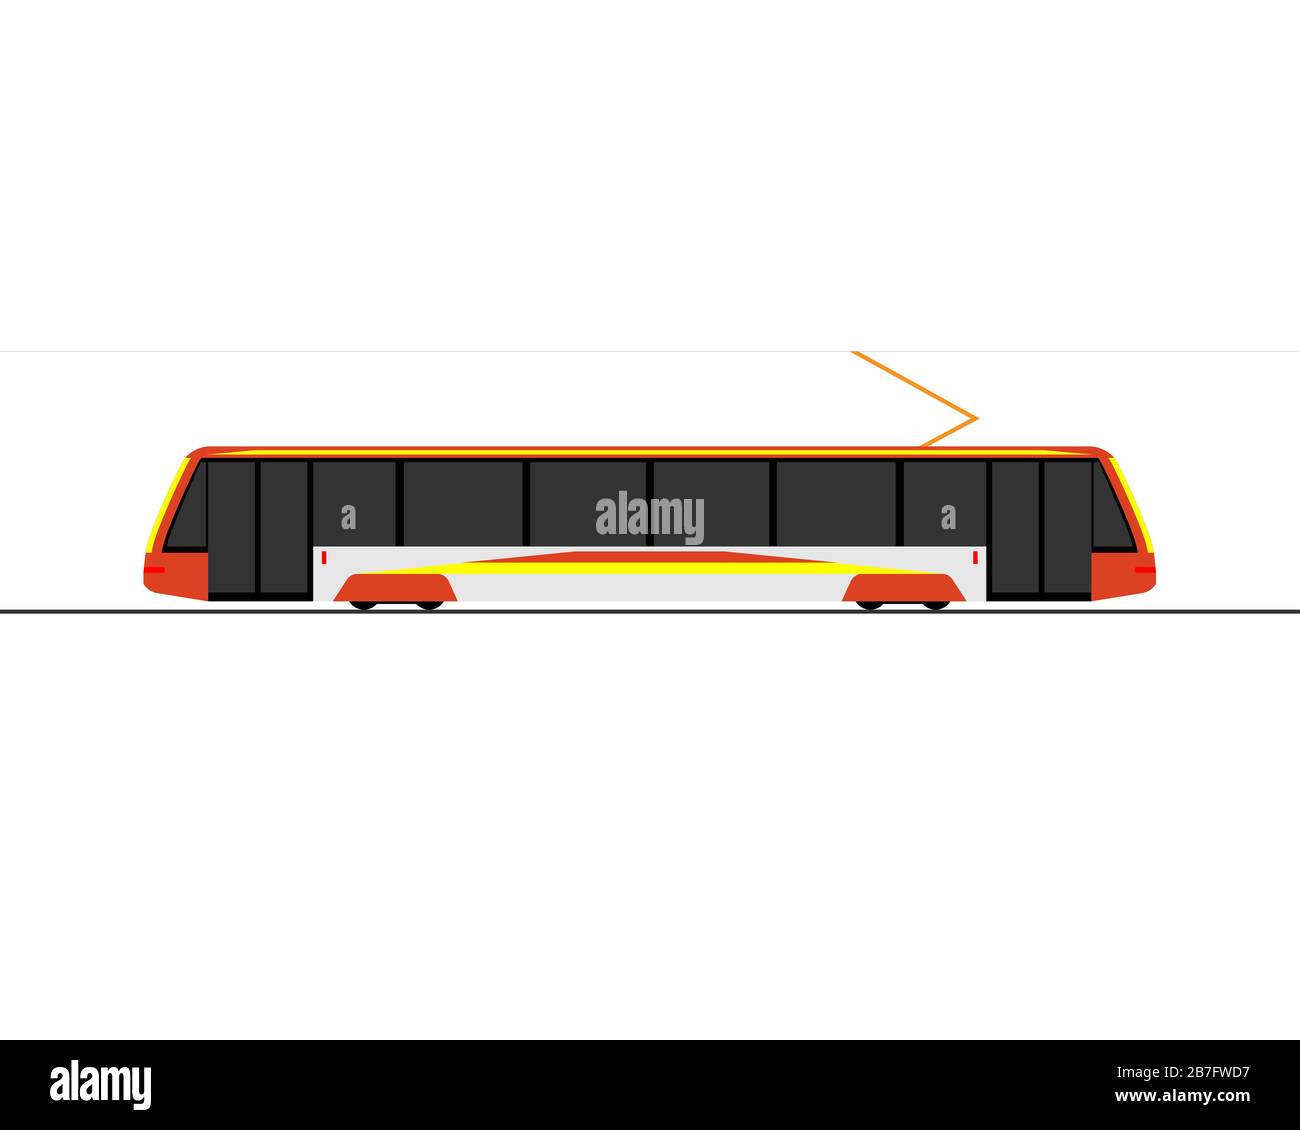 Symbol einer modernen Straßenbahn. Seitenansicht. Vektorgrafiken auf weißem Hintergrund. Stock Vektor